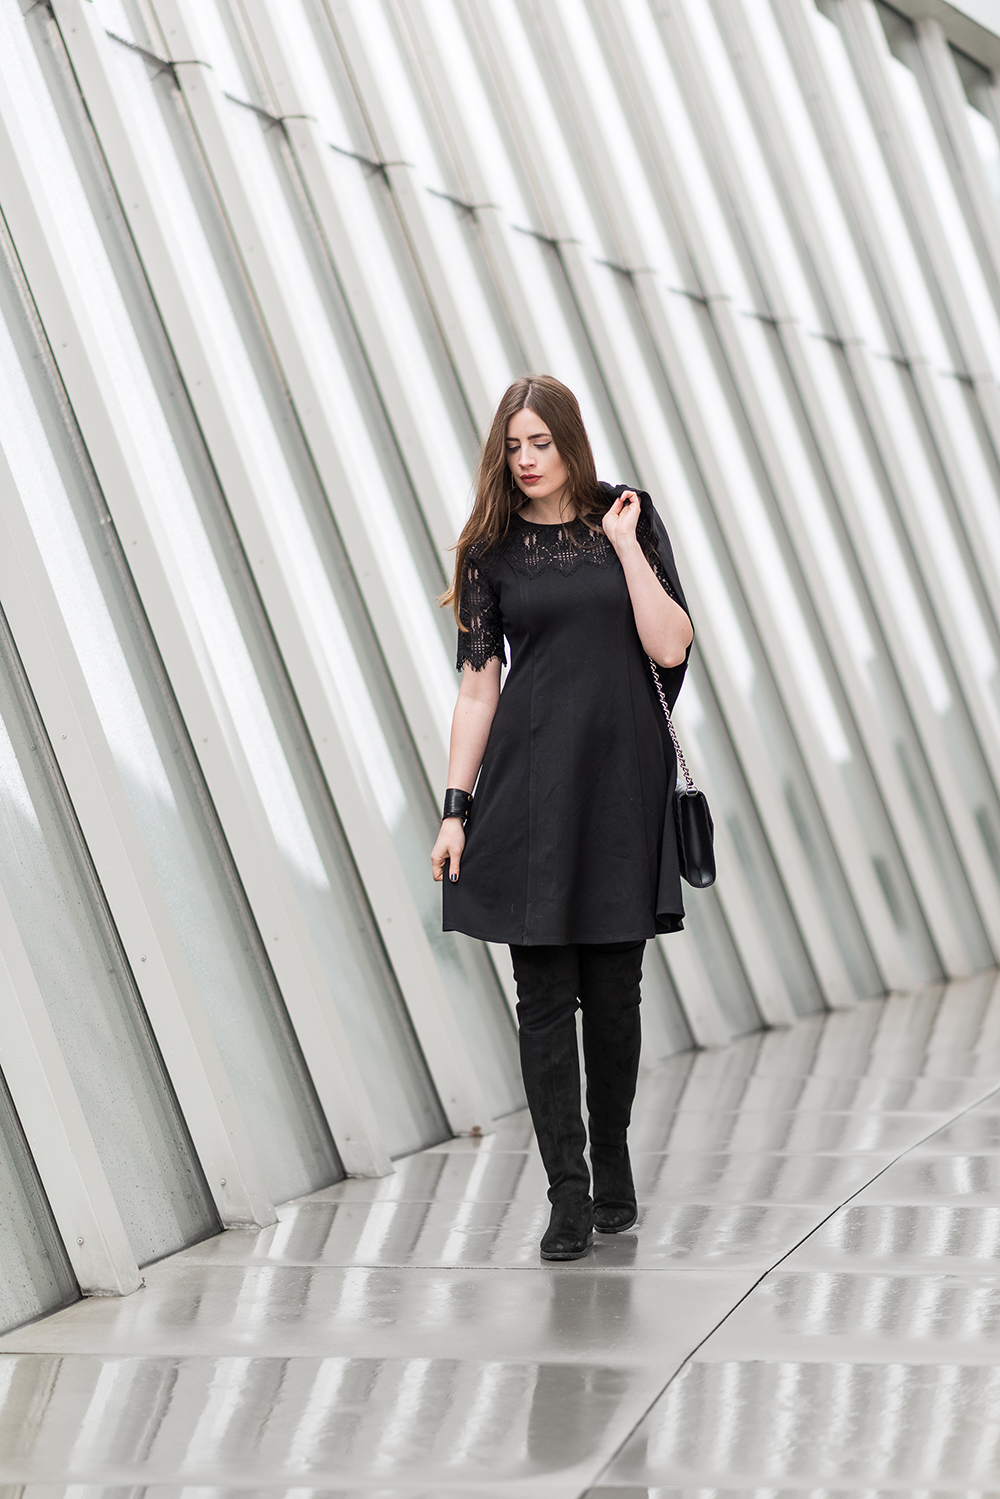 Schwarzes Kleid mit Spitze-Overknees-Stiefel-Modeblog Berlin-Abendlook-andysparkles.de